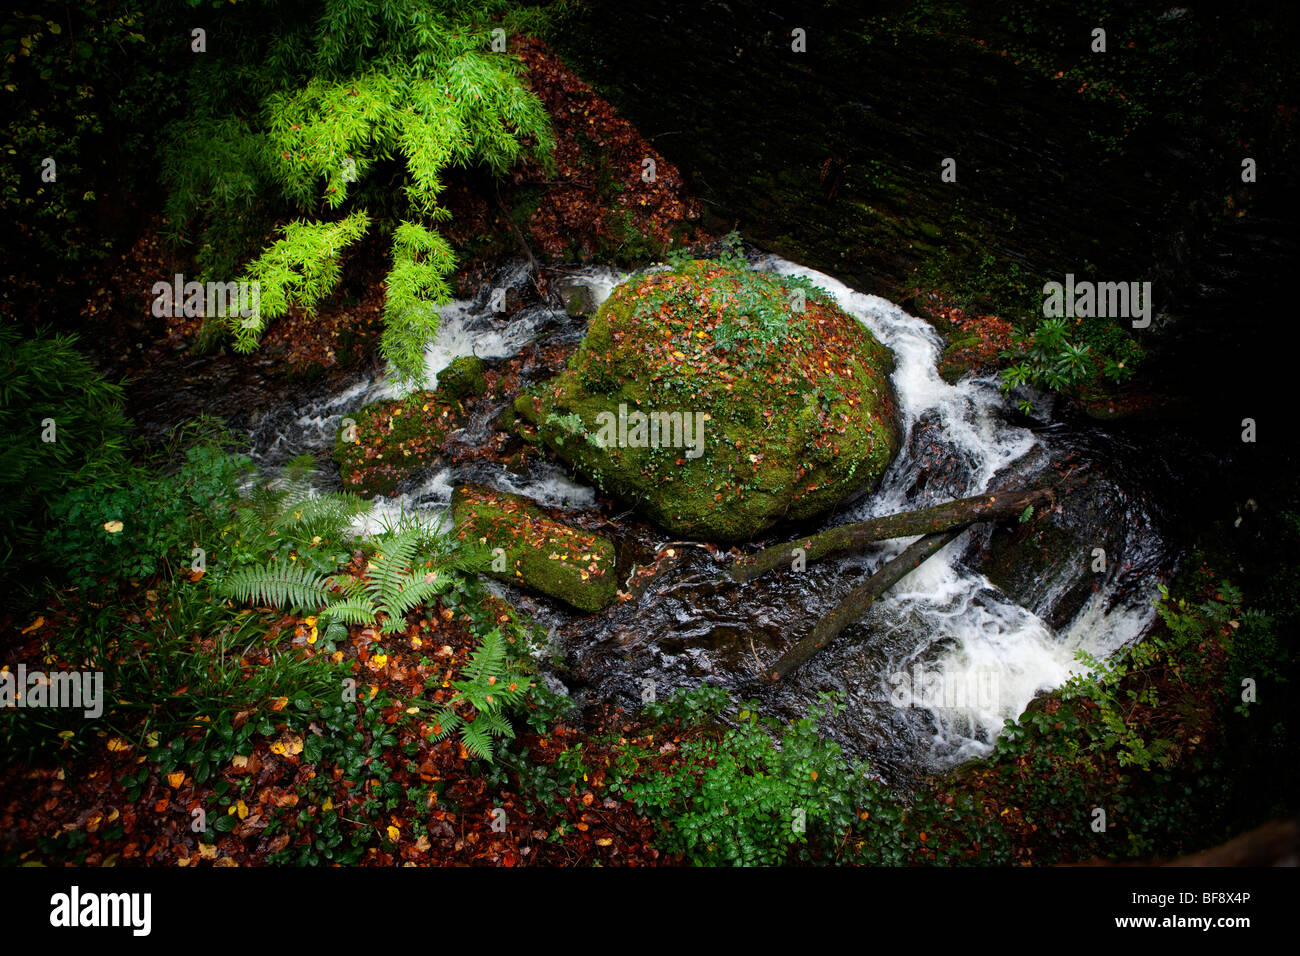 Il nord del Galles Snowdonia Croesor autunno tempestoso colorato colorato paesaggio natura Foto Stock